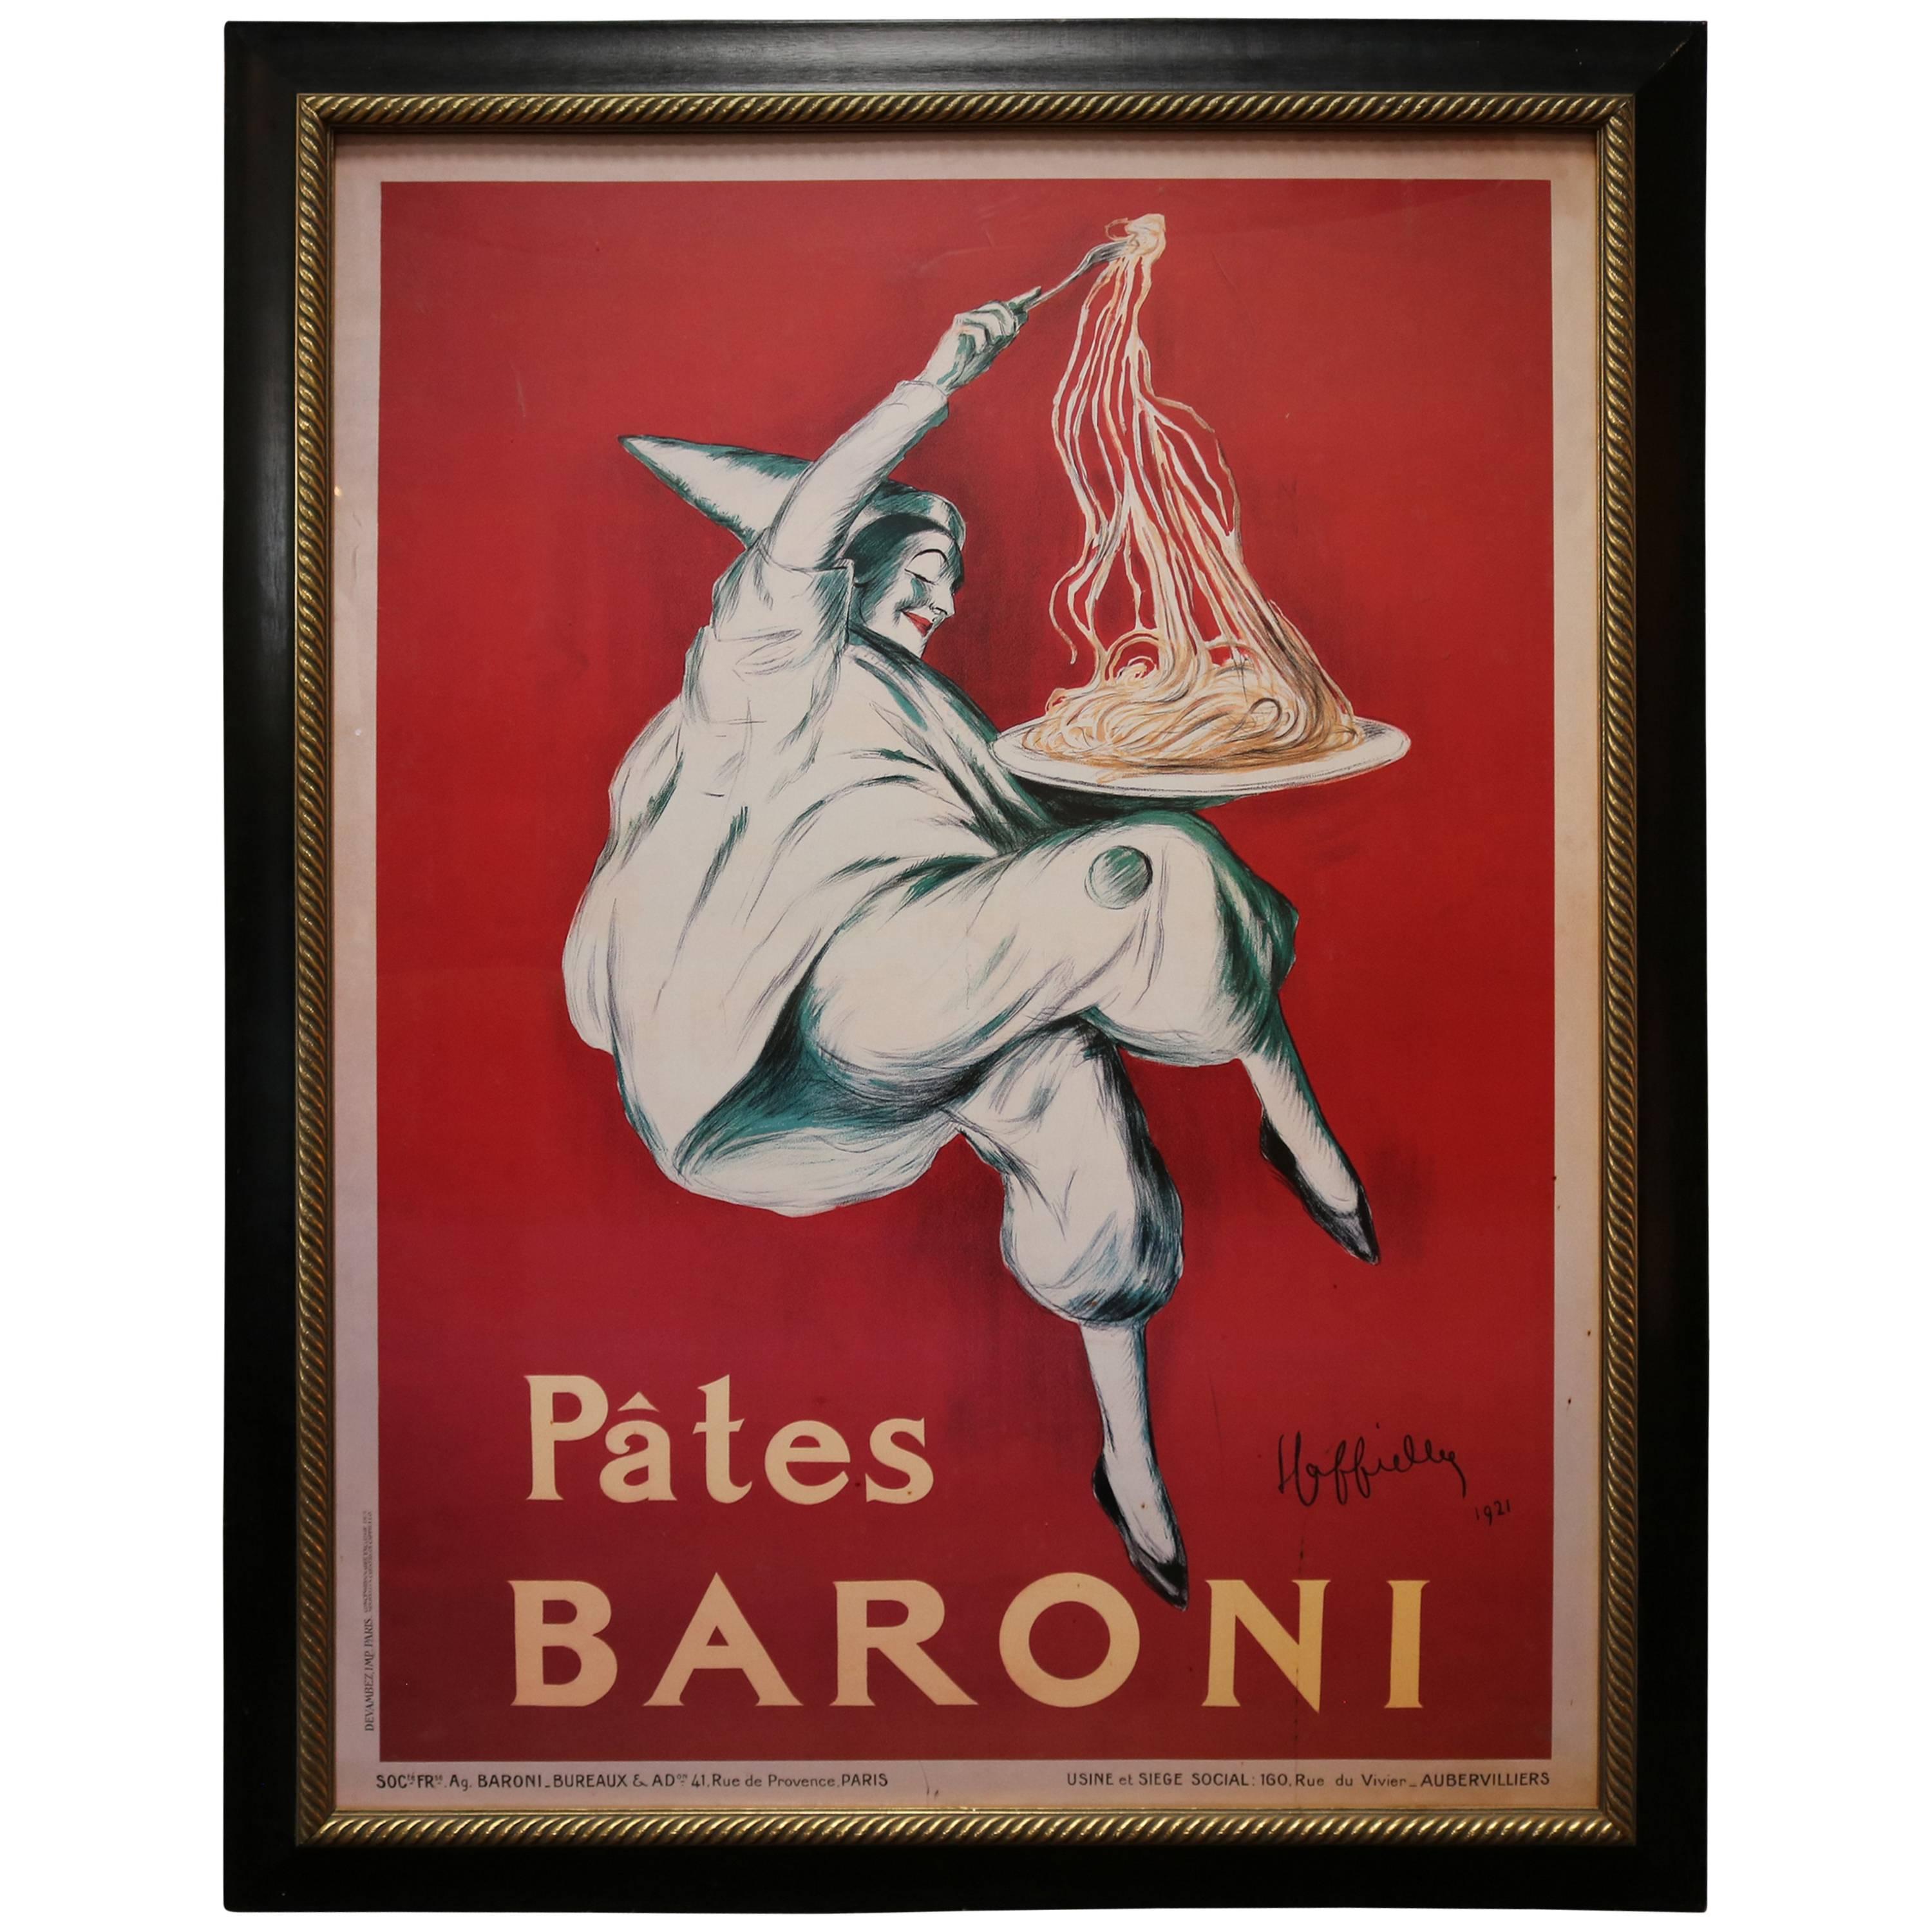 Large-Scale Poster of "Pates Baroni" Ad by Leonetto Cappiello